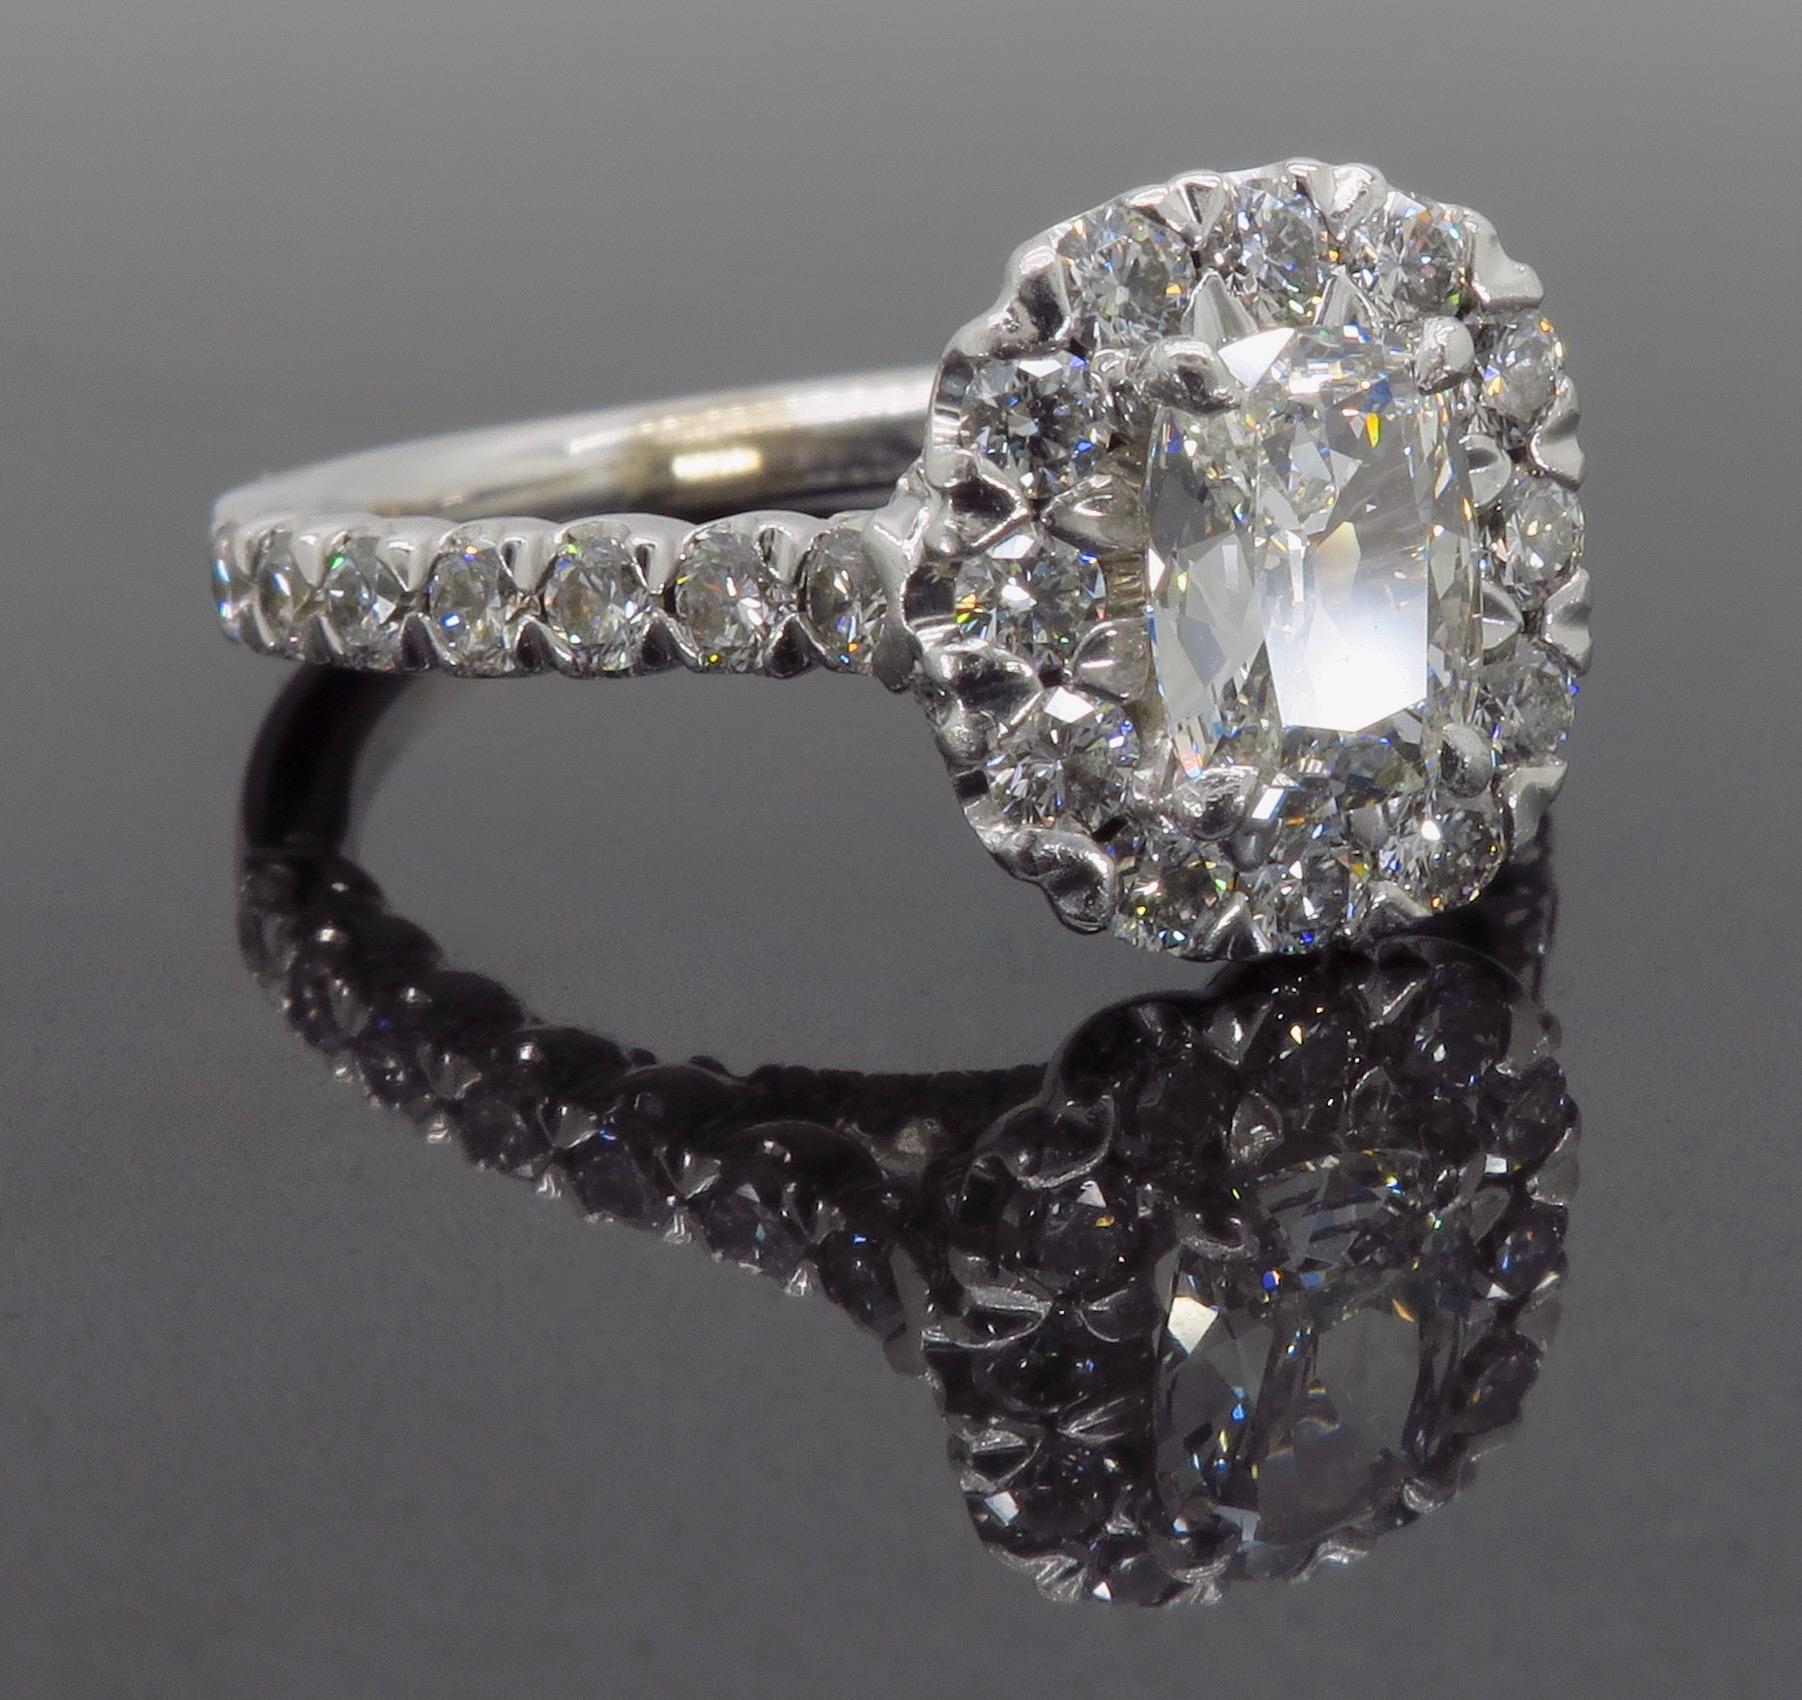 Henri Daussi Signature Halo Diamond Engagement Ring in 18 Karat White Gold 5